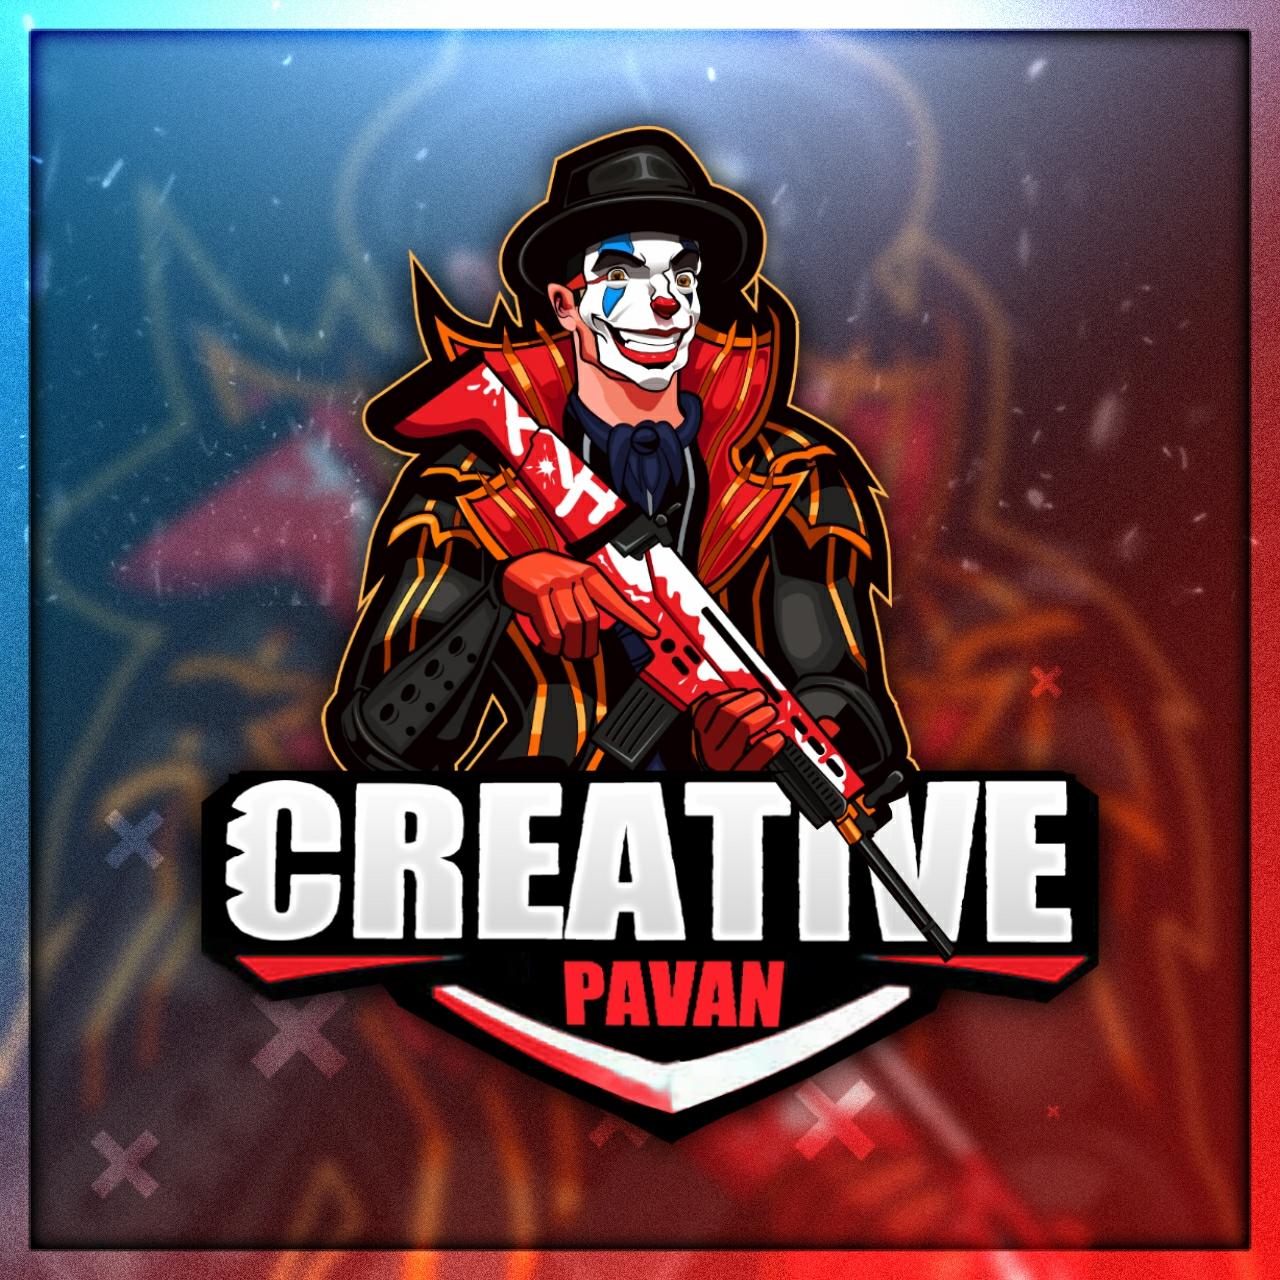 Creative Pavan